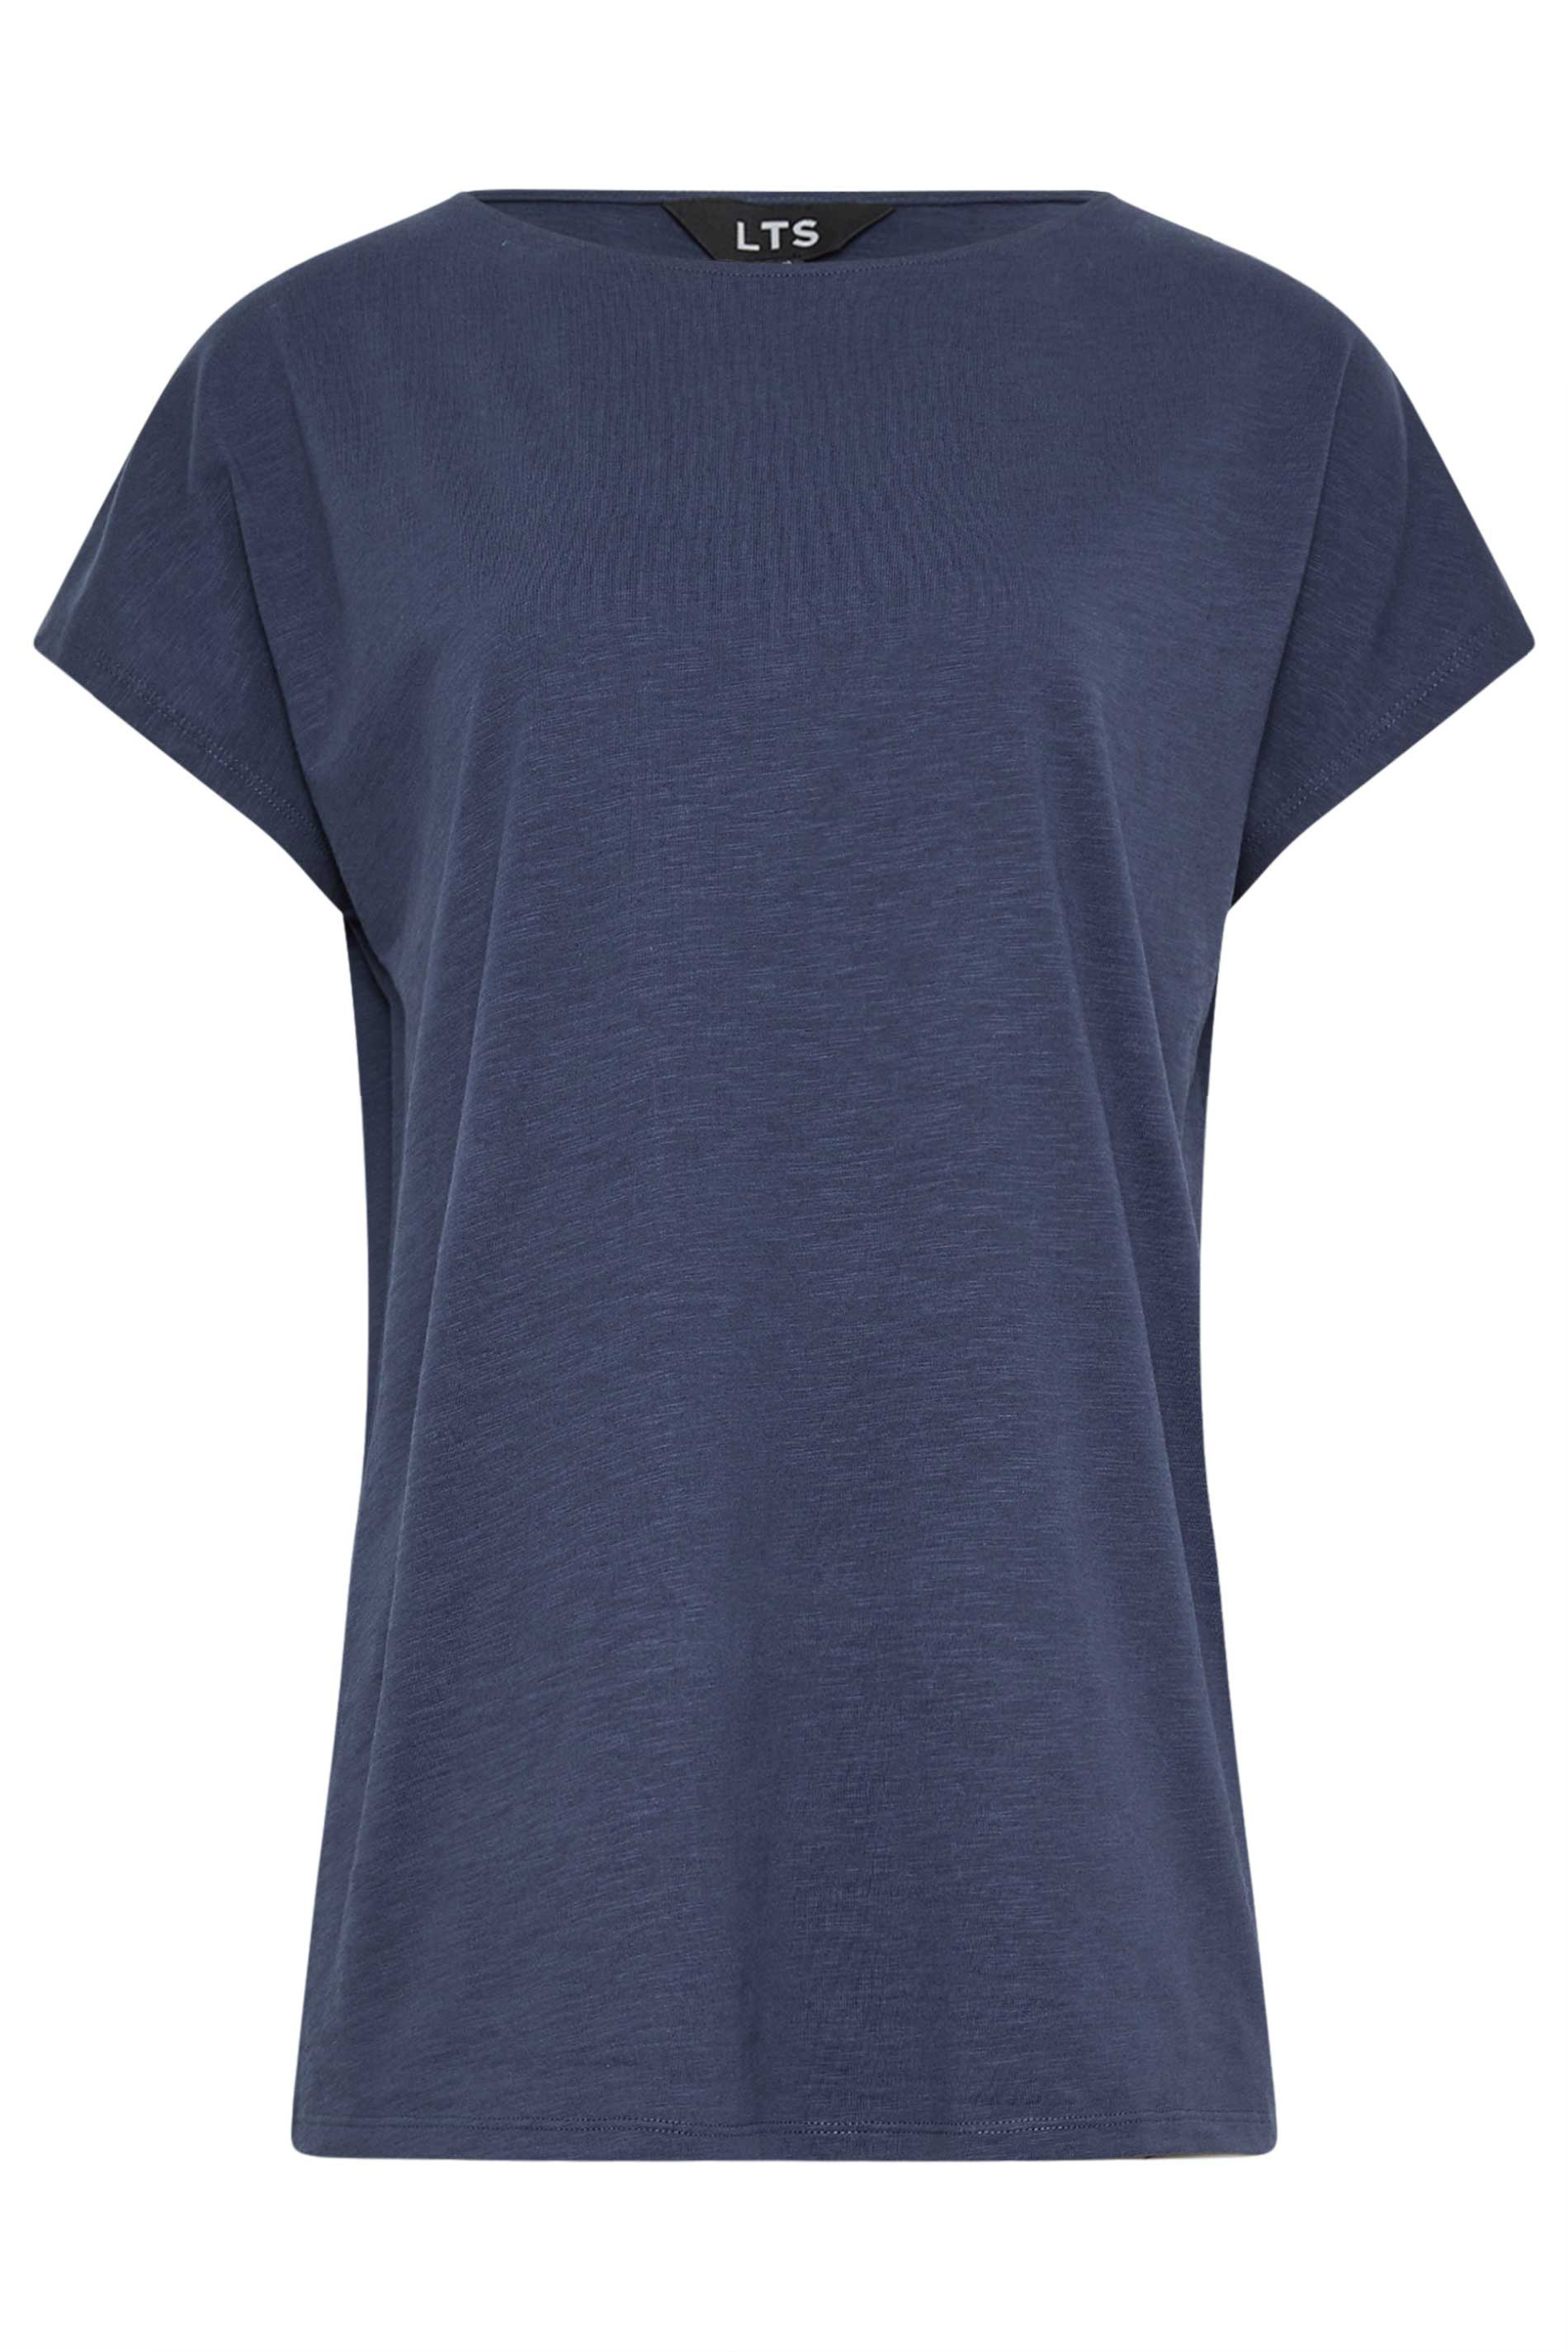 LTS Tall Womens Dark Blue Short Sleeve T-Shirt